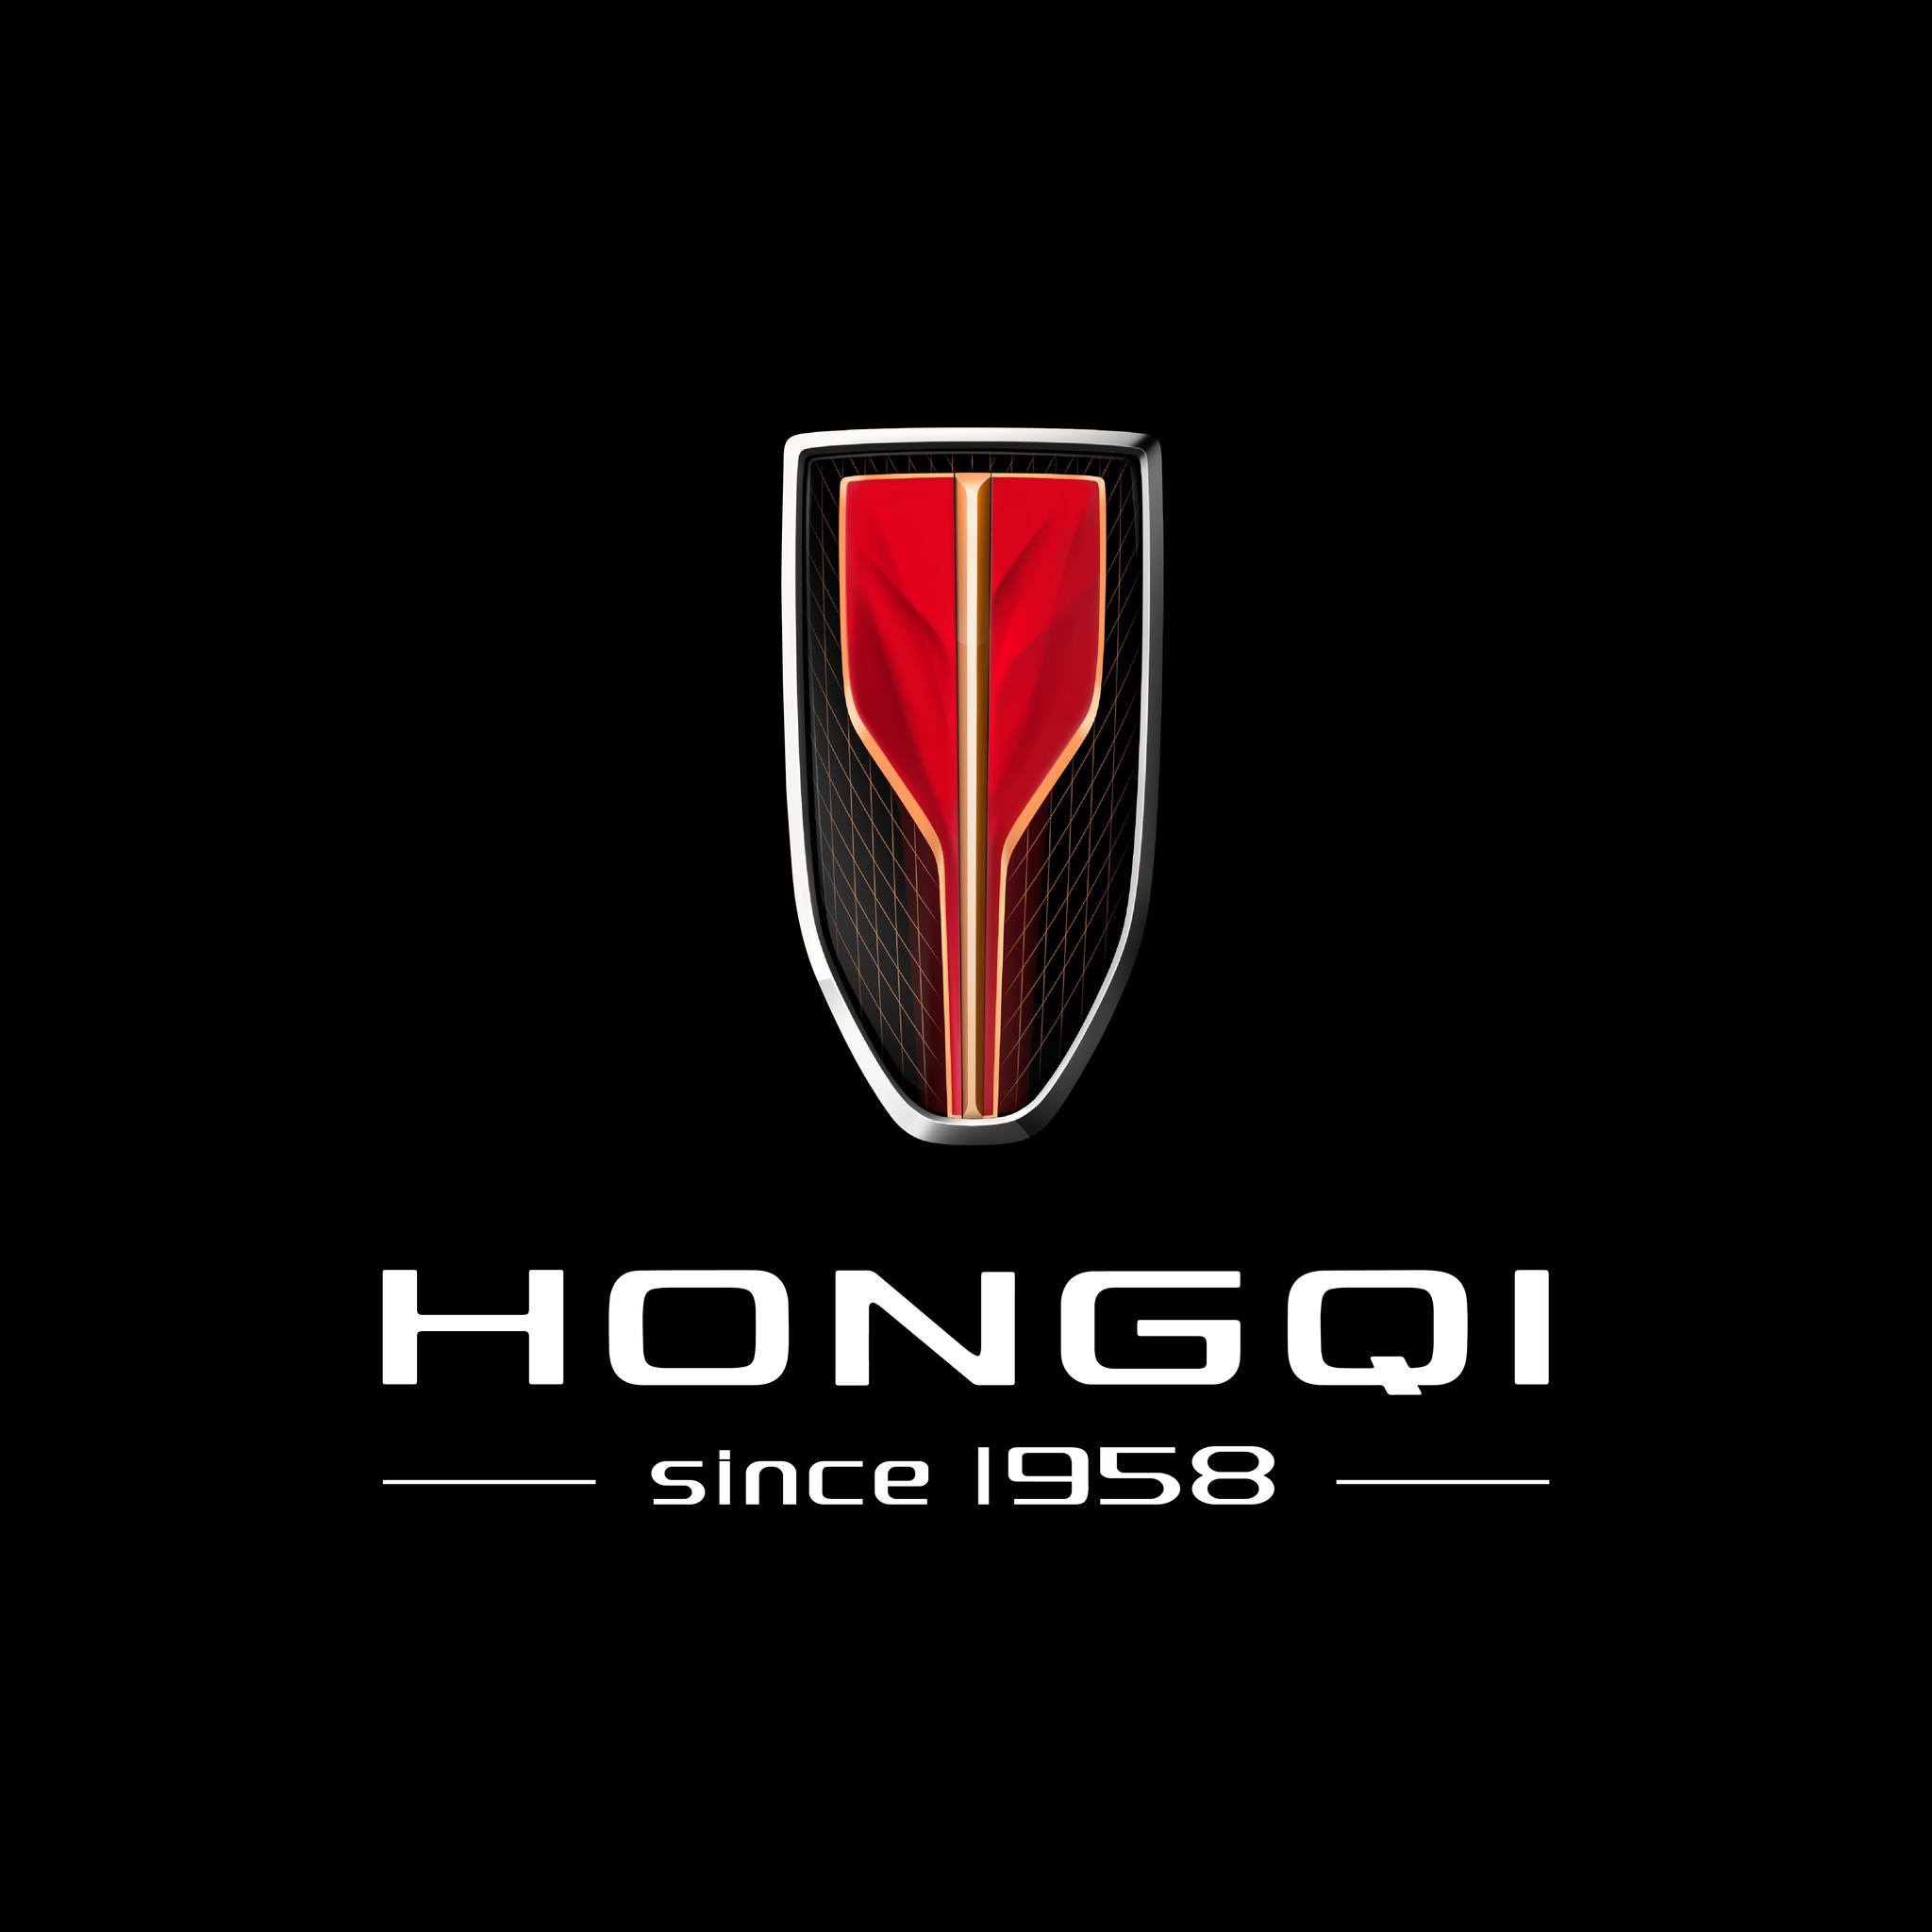 وكيل سيارات هونشي Hongqi في الاردن شركة الاتحاد لتزويد المعدات